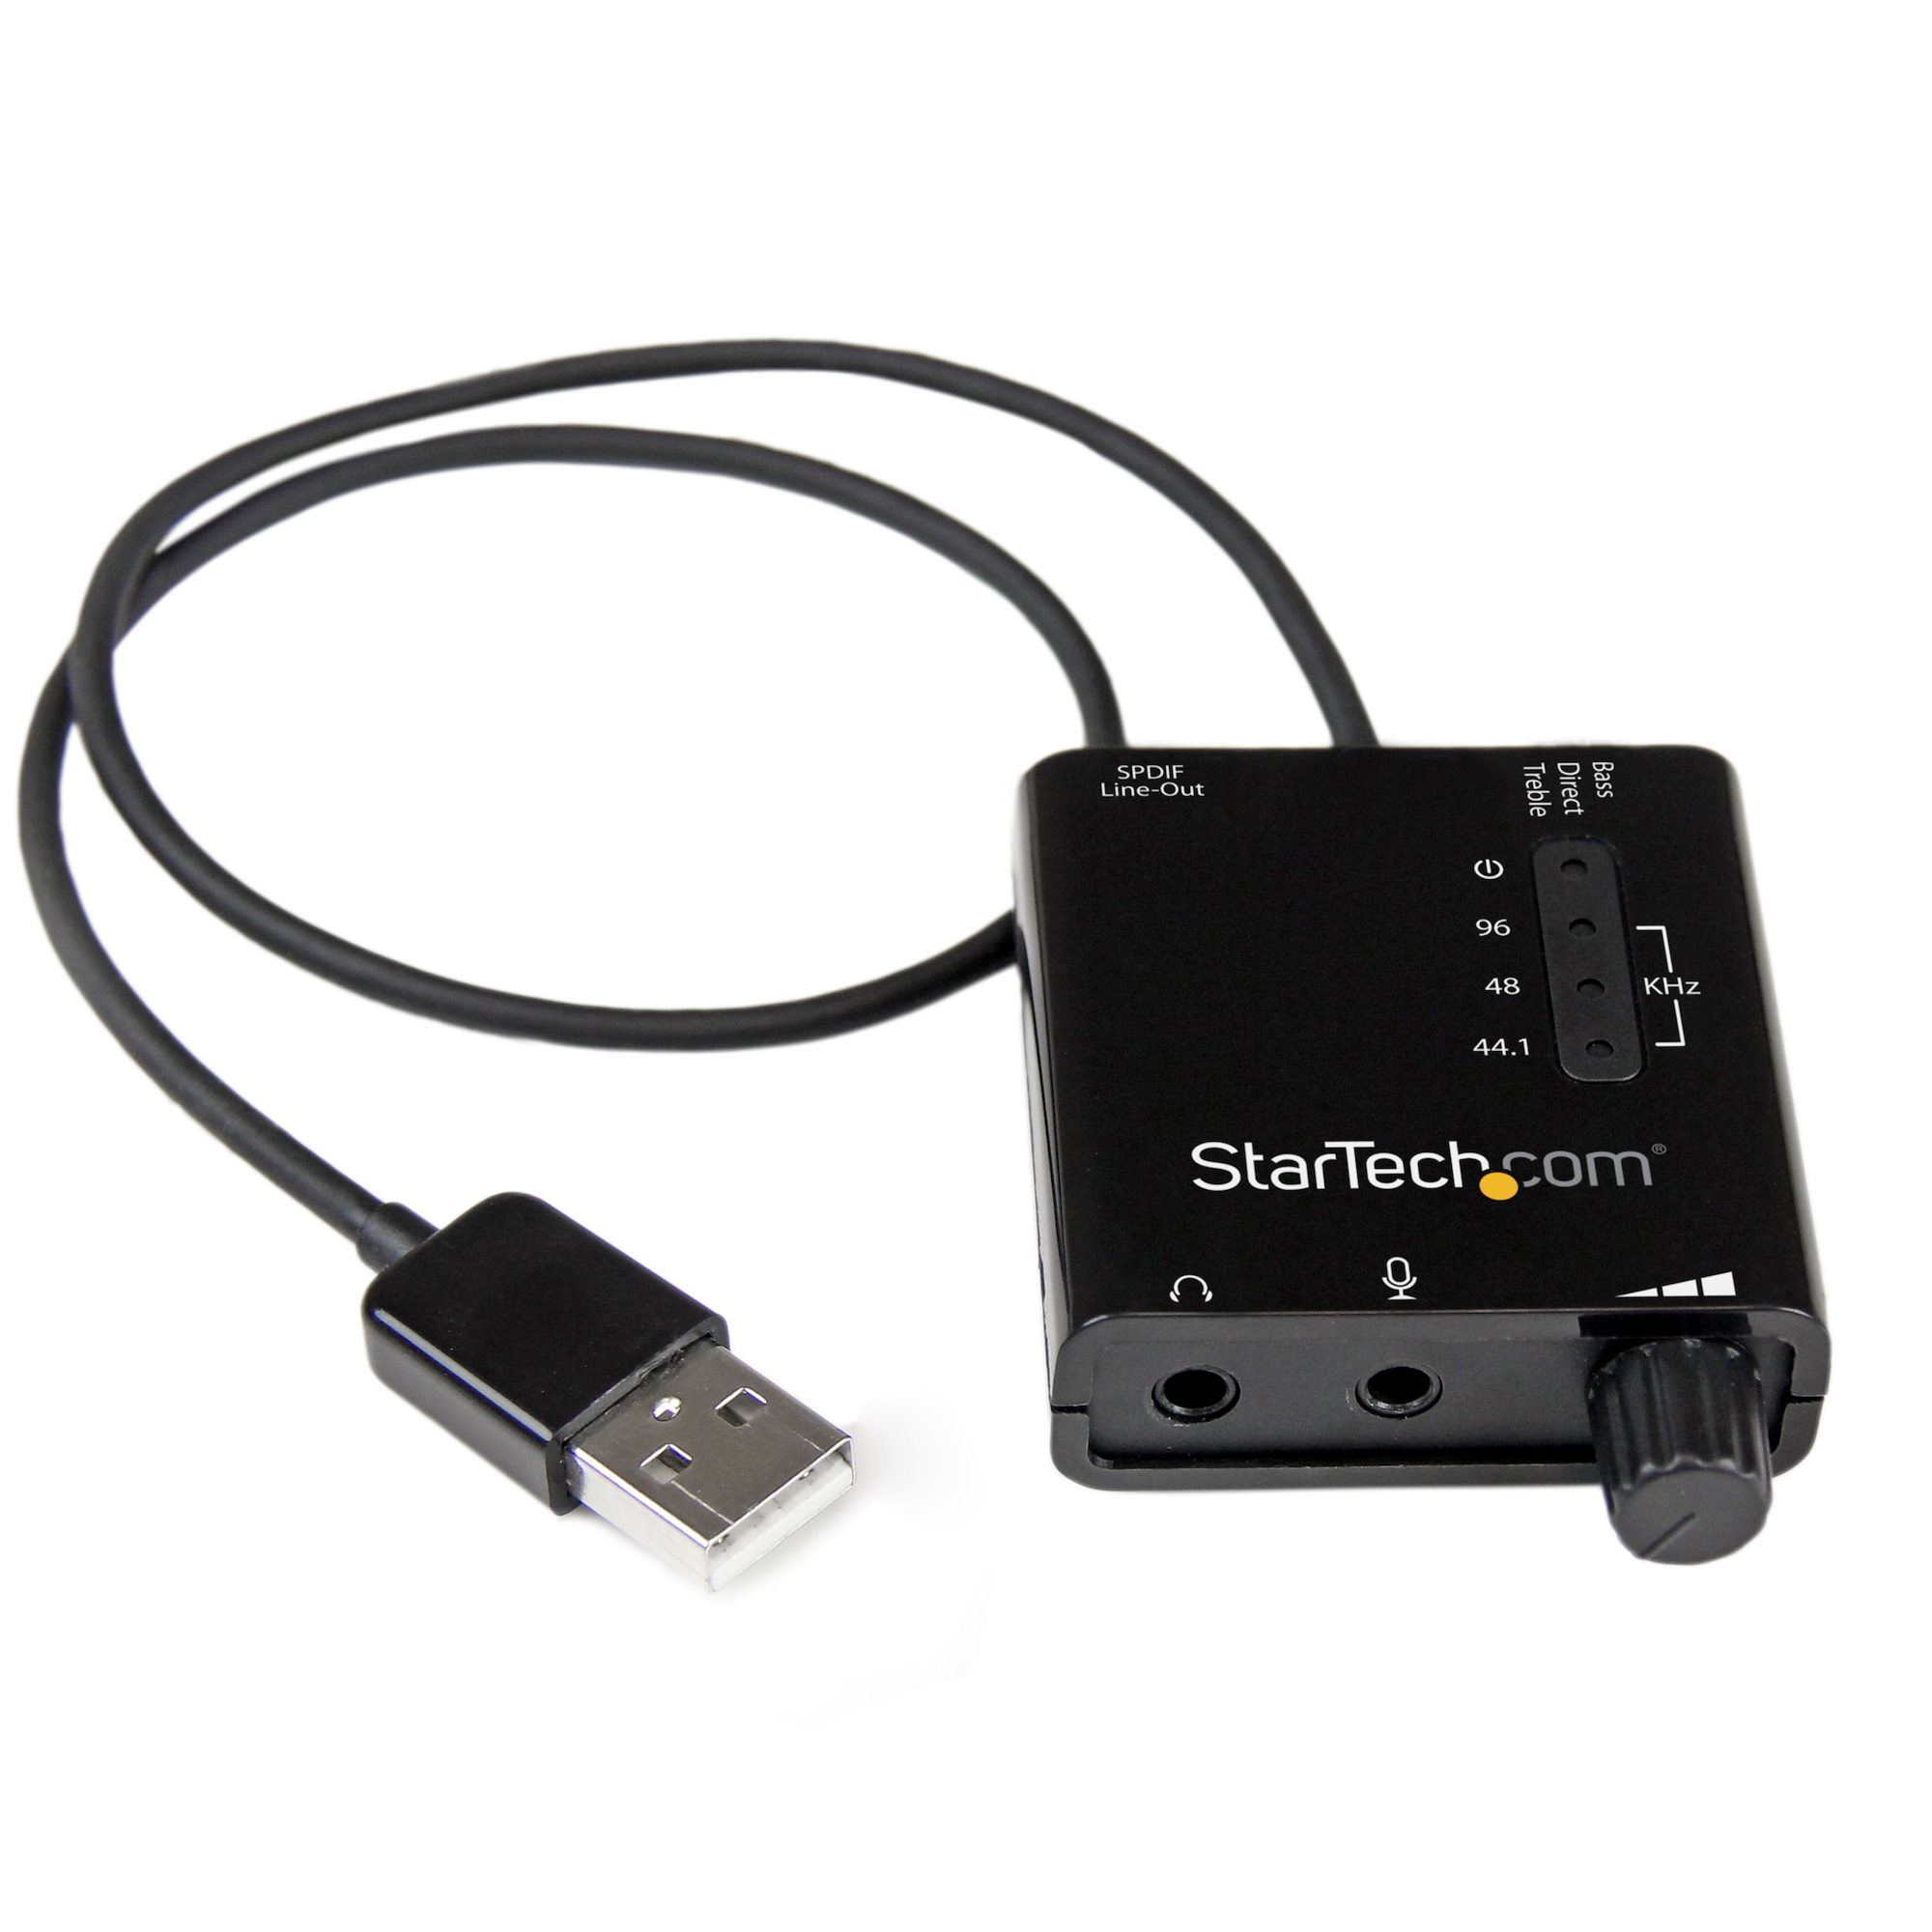 StarTech.com ICUSBAUDIO2D ljudkort 5.1 kanaler USB